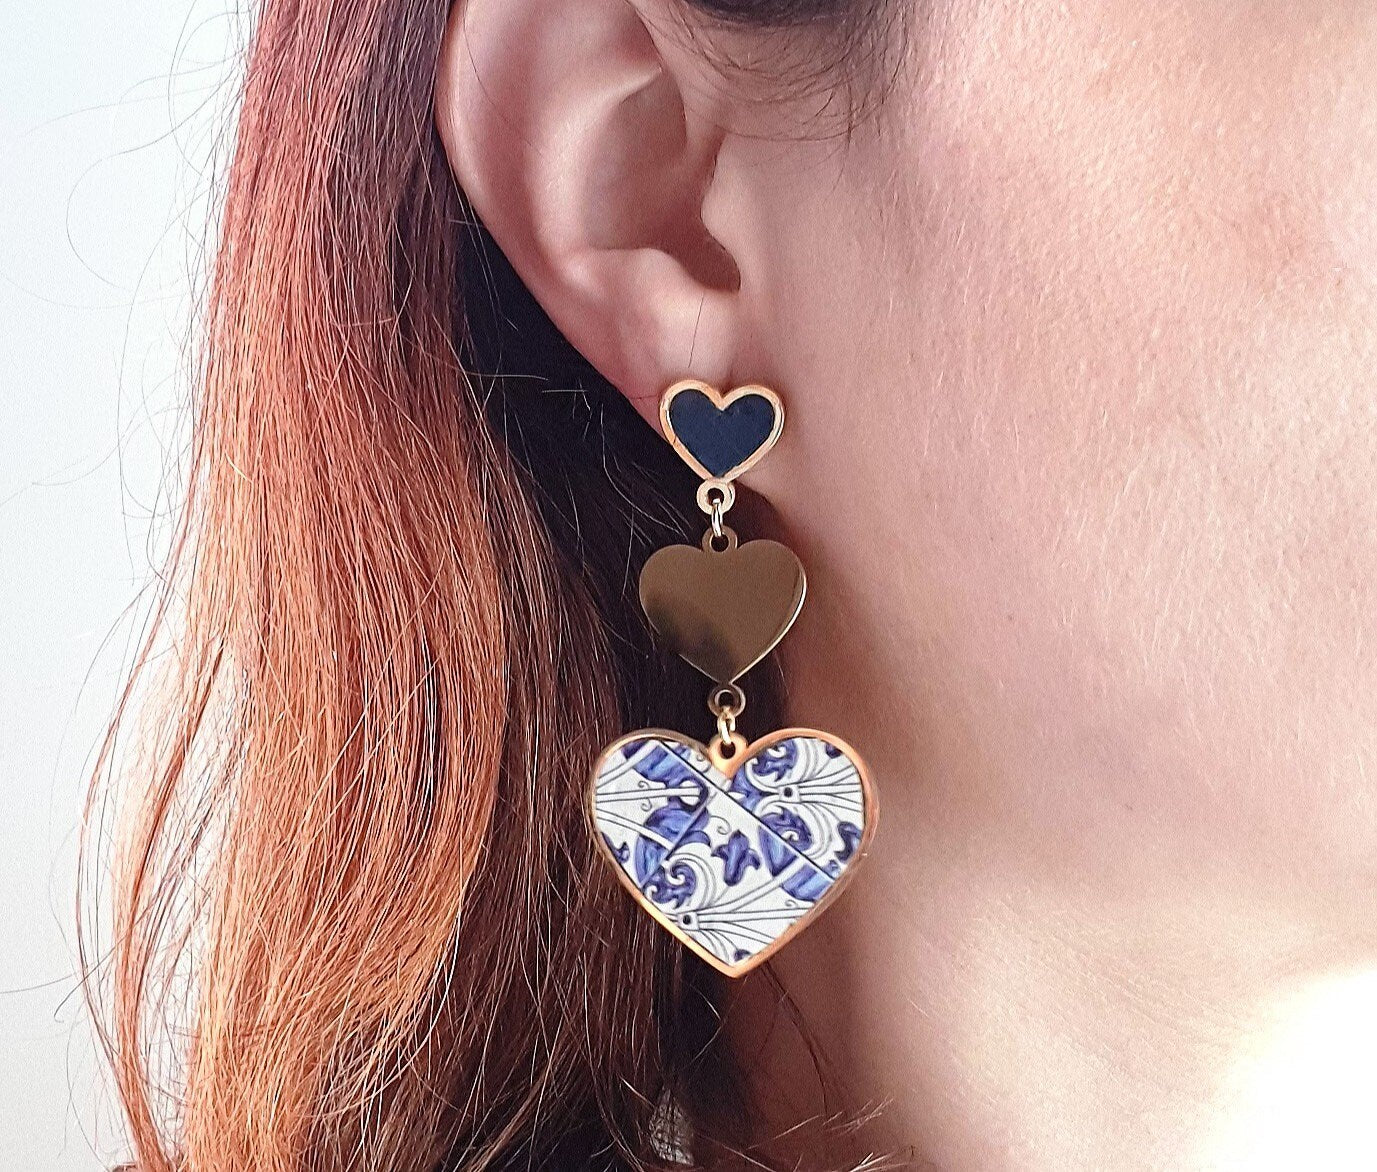 Heart Tile Cork Earrings Bold Statement Earrings Portugal Azulejos Steel Earrings Eco Leather Gold Cork Jewelry Antique Blue Azulejos